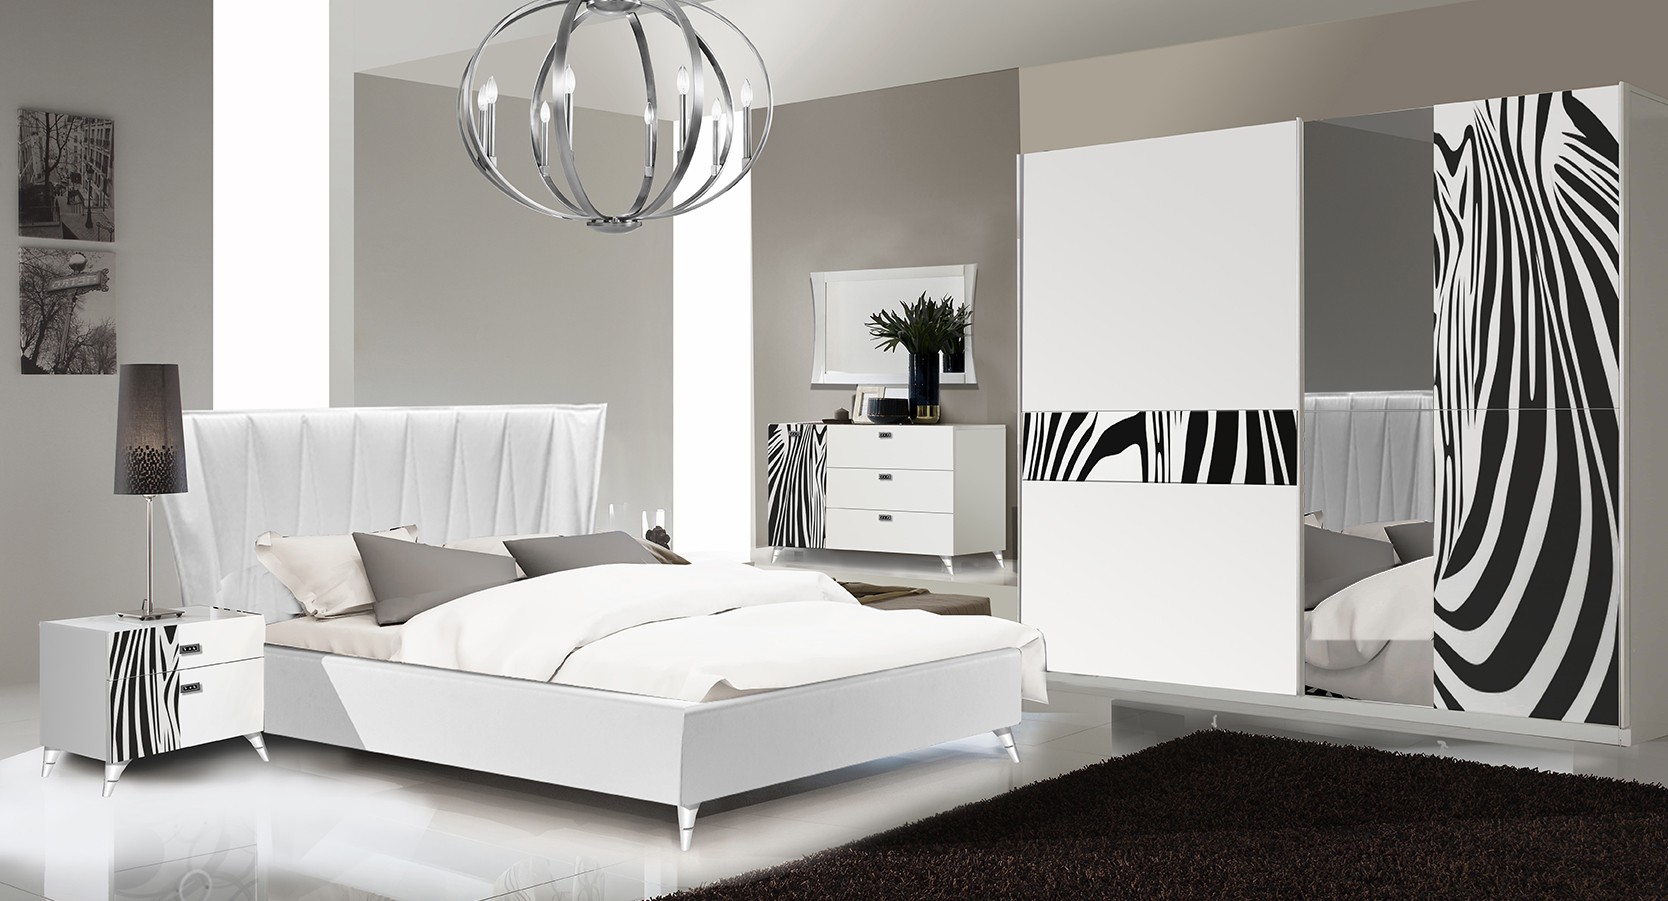 Elegantes Schwarz-weißes Schlafzimmer Set mit Zebramuster-Applikationen bestehend aus Nachtisch, Bett, Wandspiegel, Kommode und Schwebetüren-Spiegelschrank.